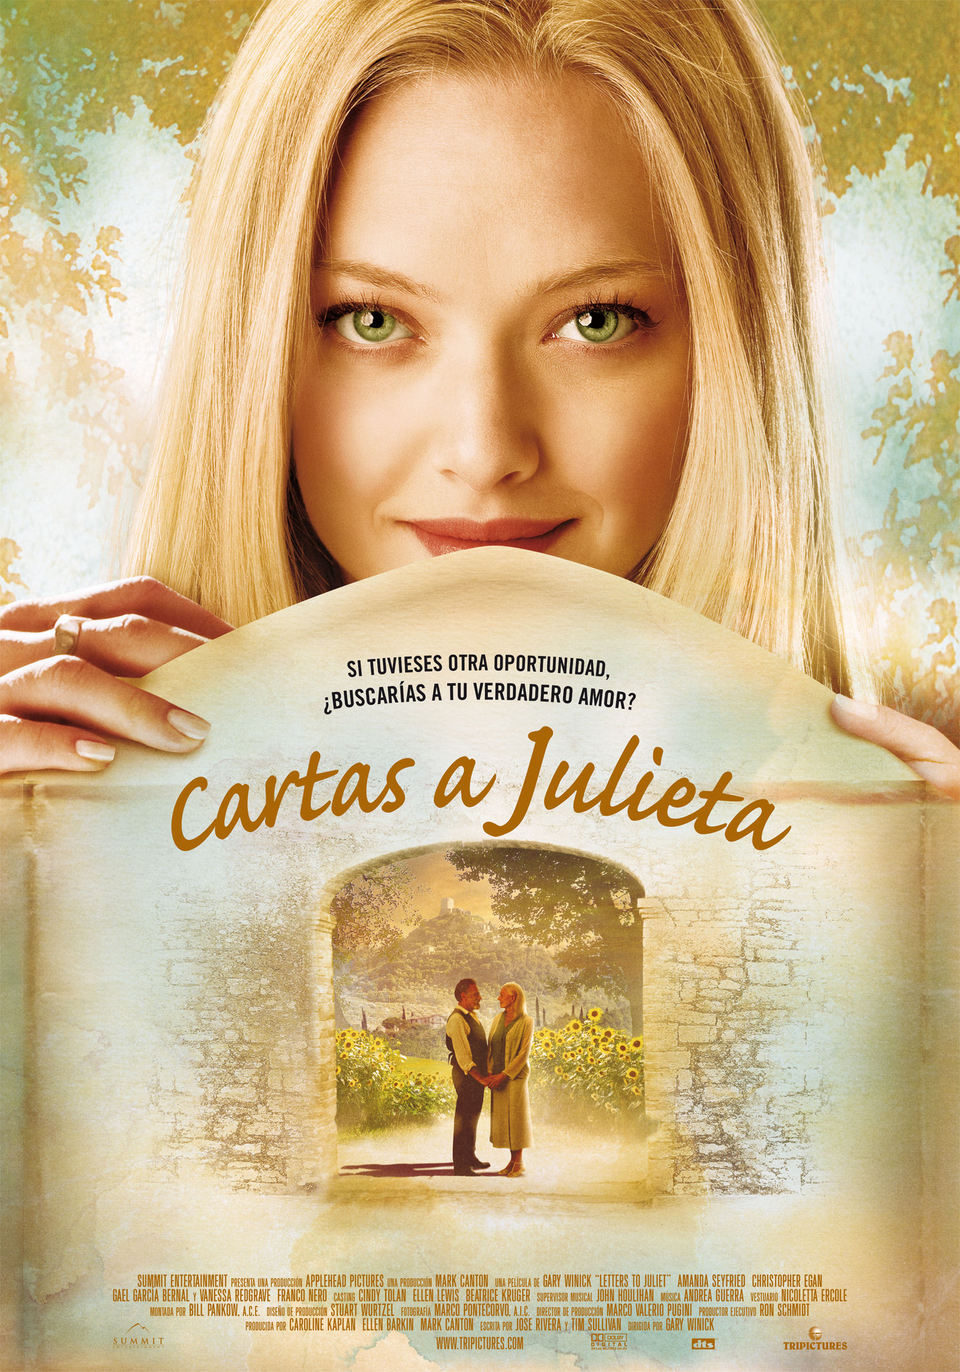 Cartel de Cartas a Julieta - España